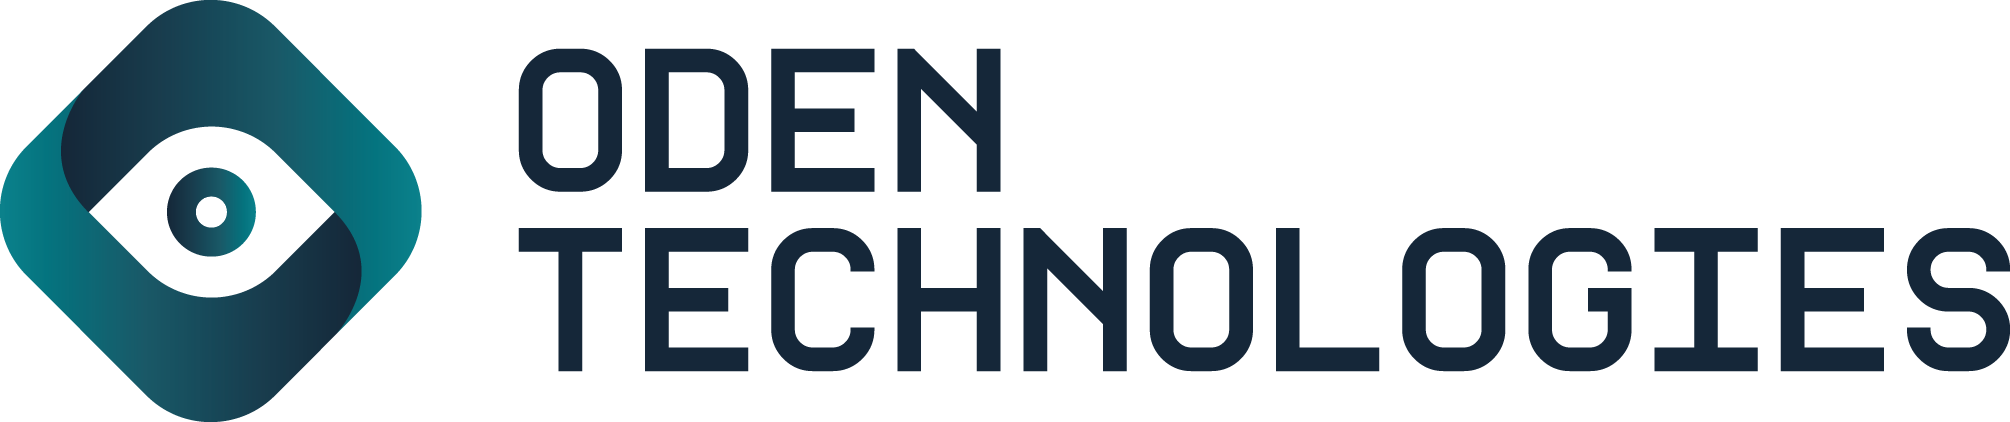 Oden-Technologies